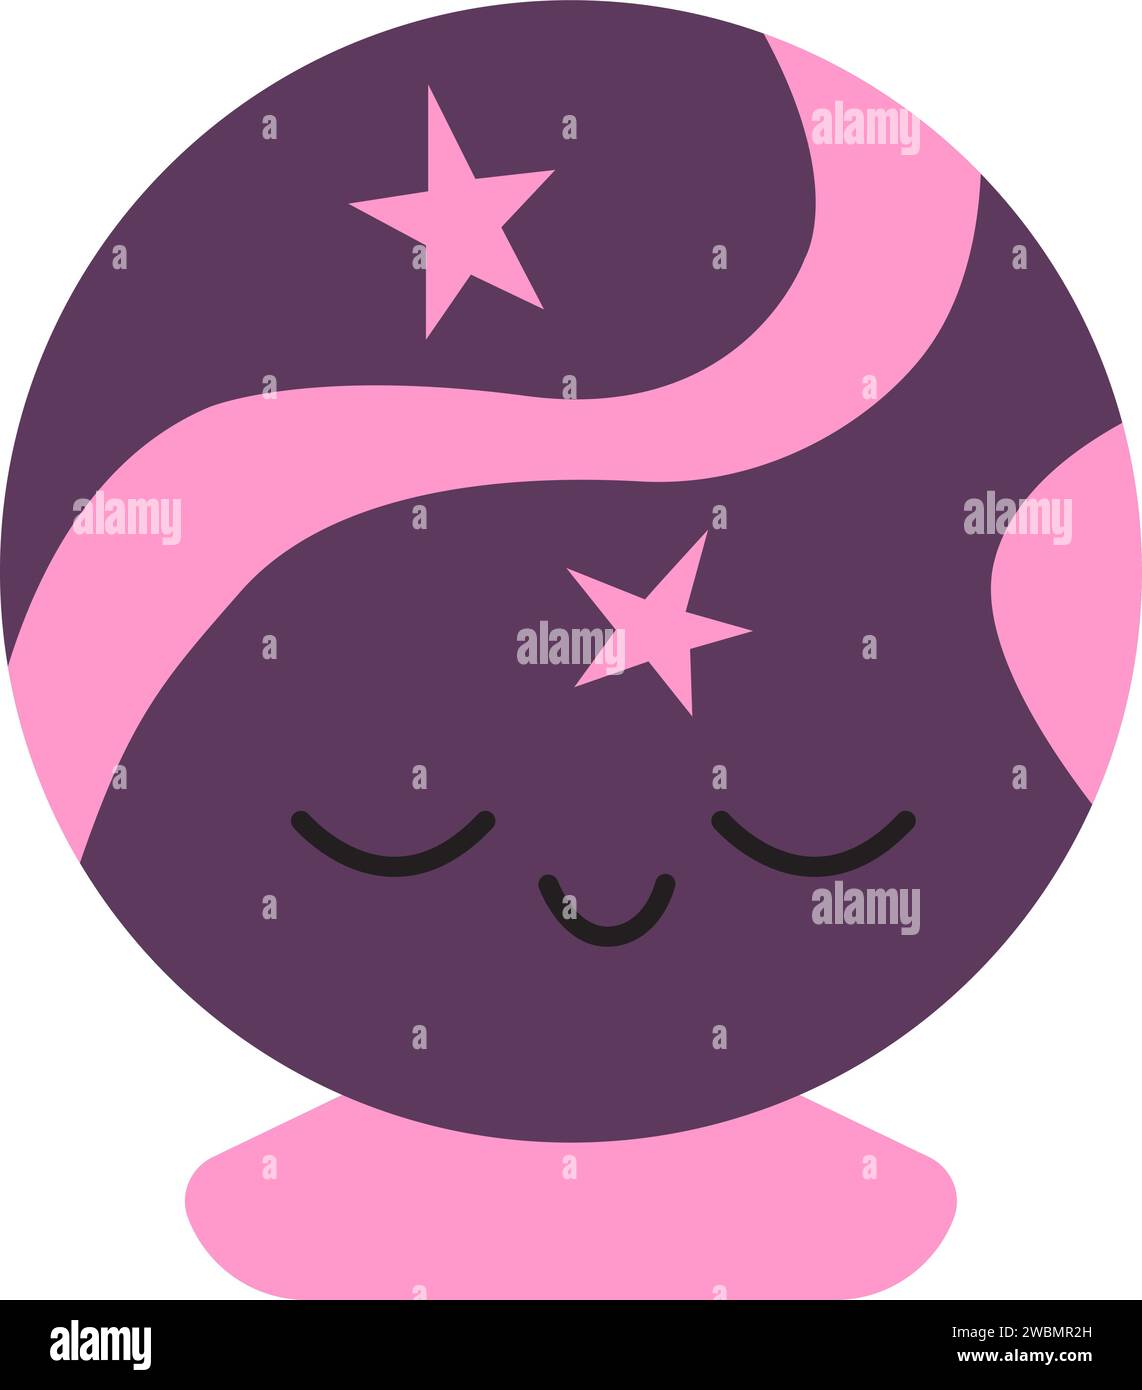 Palla magica in stile kawaii. Simpatico personaggio. Adesivo vettoriale isolato nei colori viola e rosa Illustrazione Vettoriale